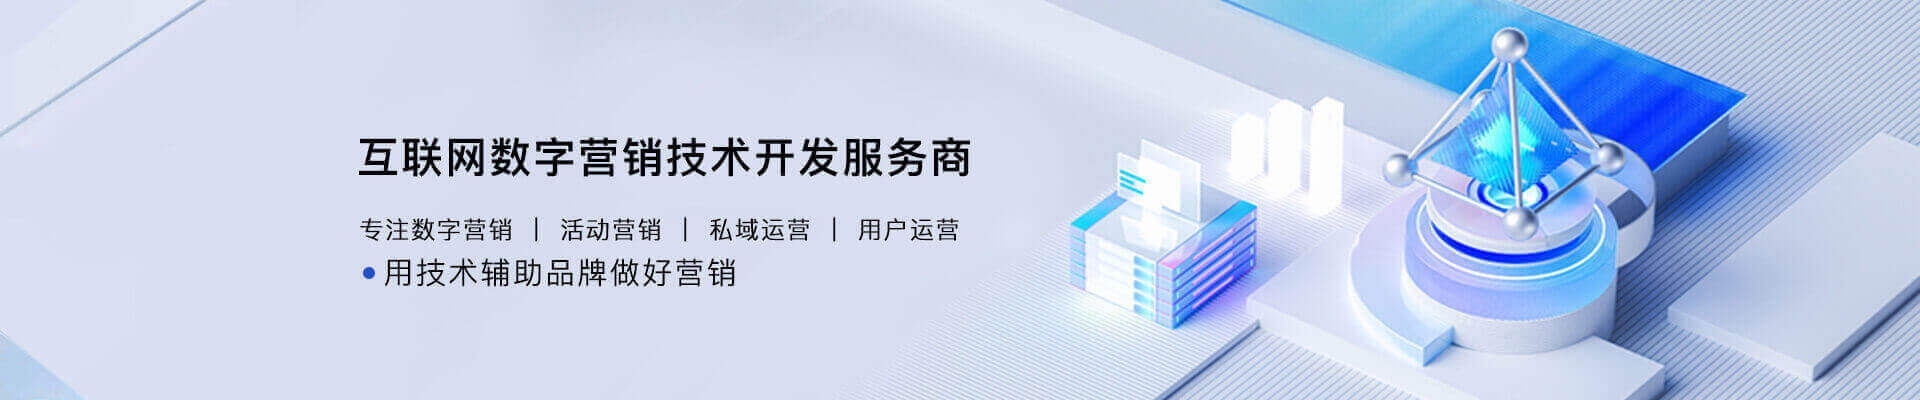 深圳建设网站公司